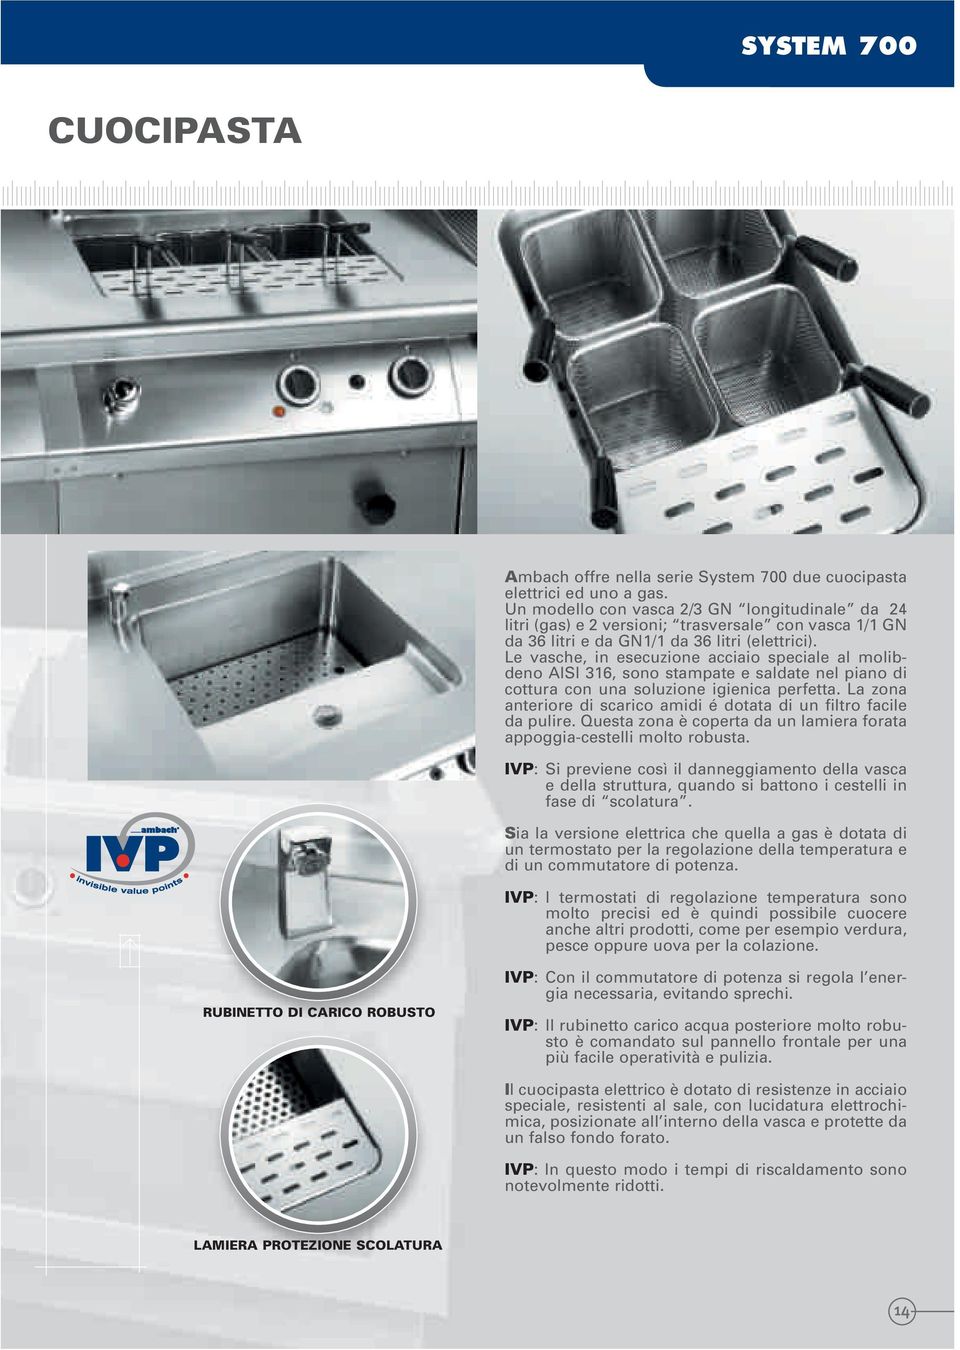 Le vasche, in esecuzione acciaio speciale al molibdeno AISI 316, sono stampate e saldate nel piano di cottura con una soluzione igienica perfetta.